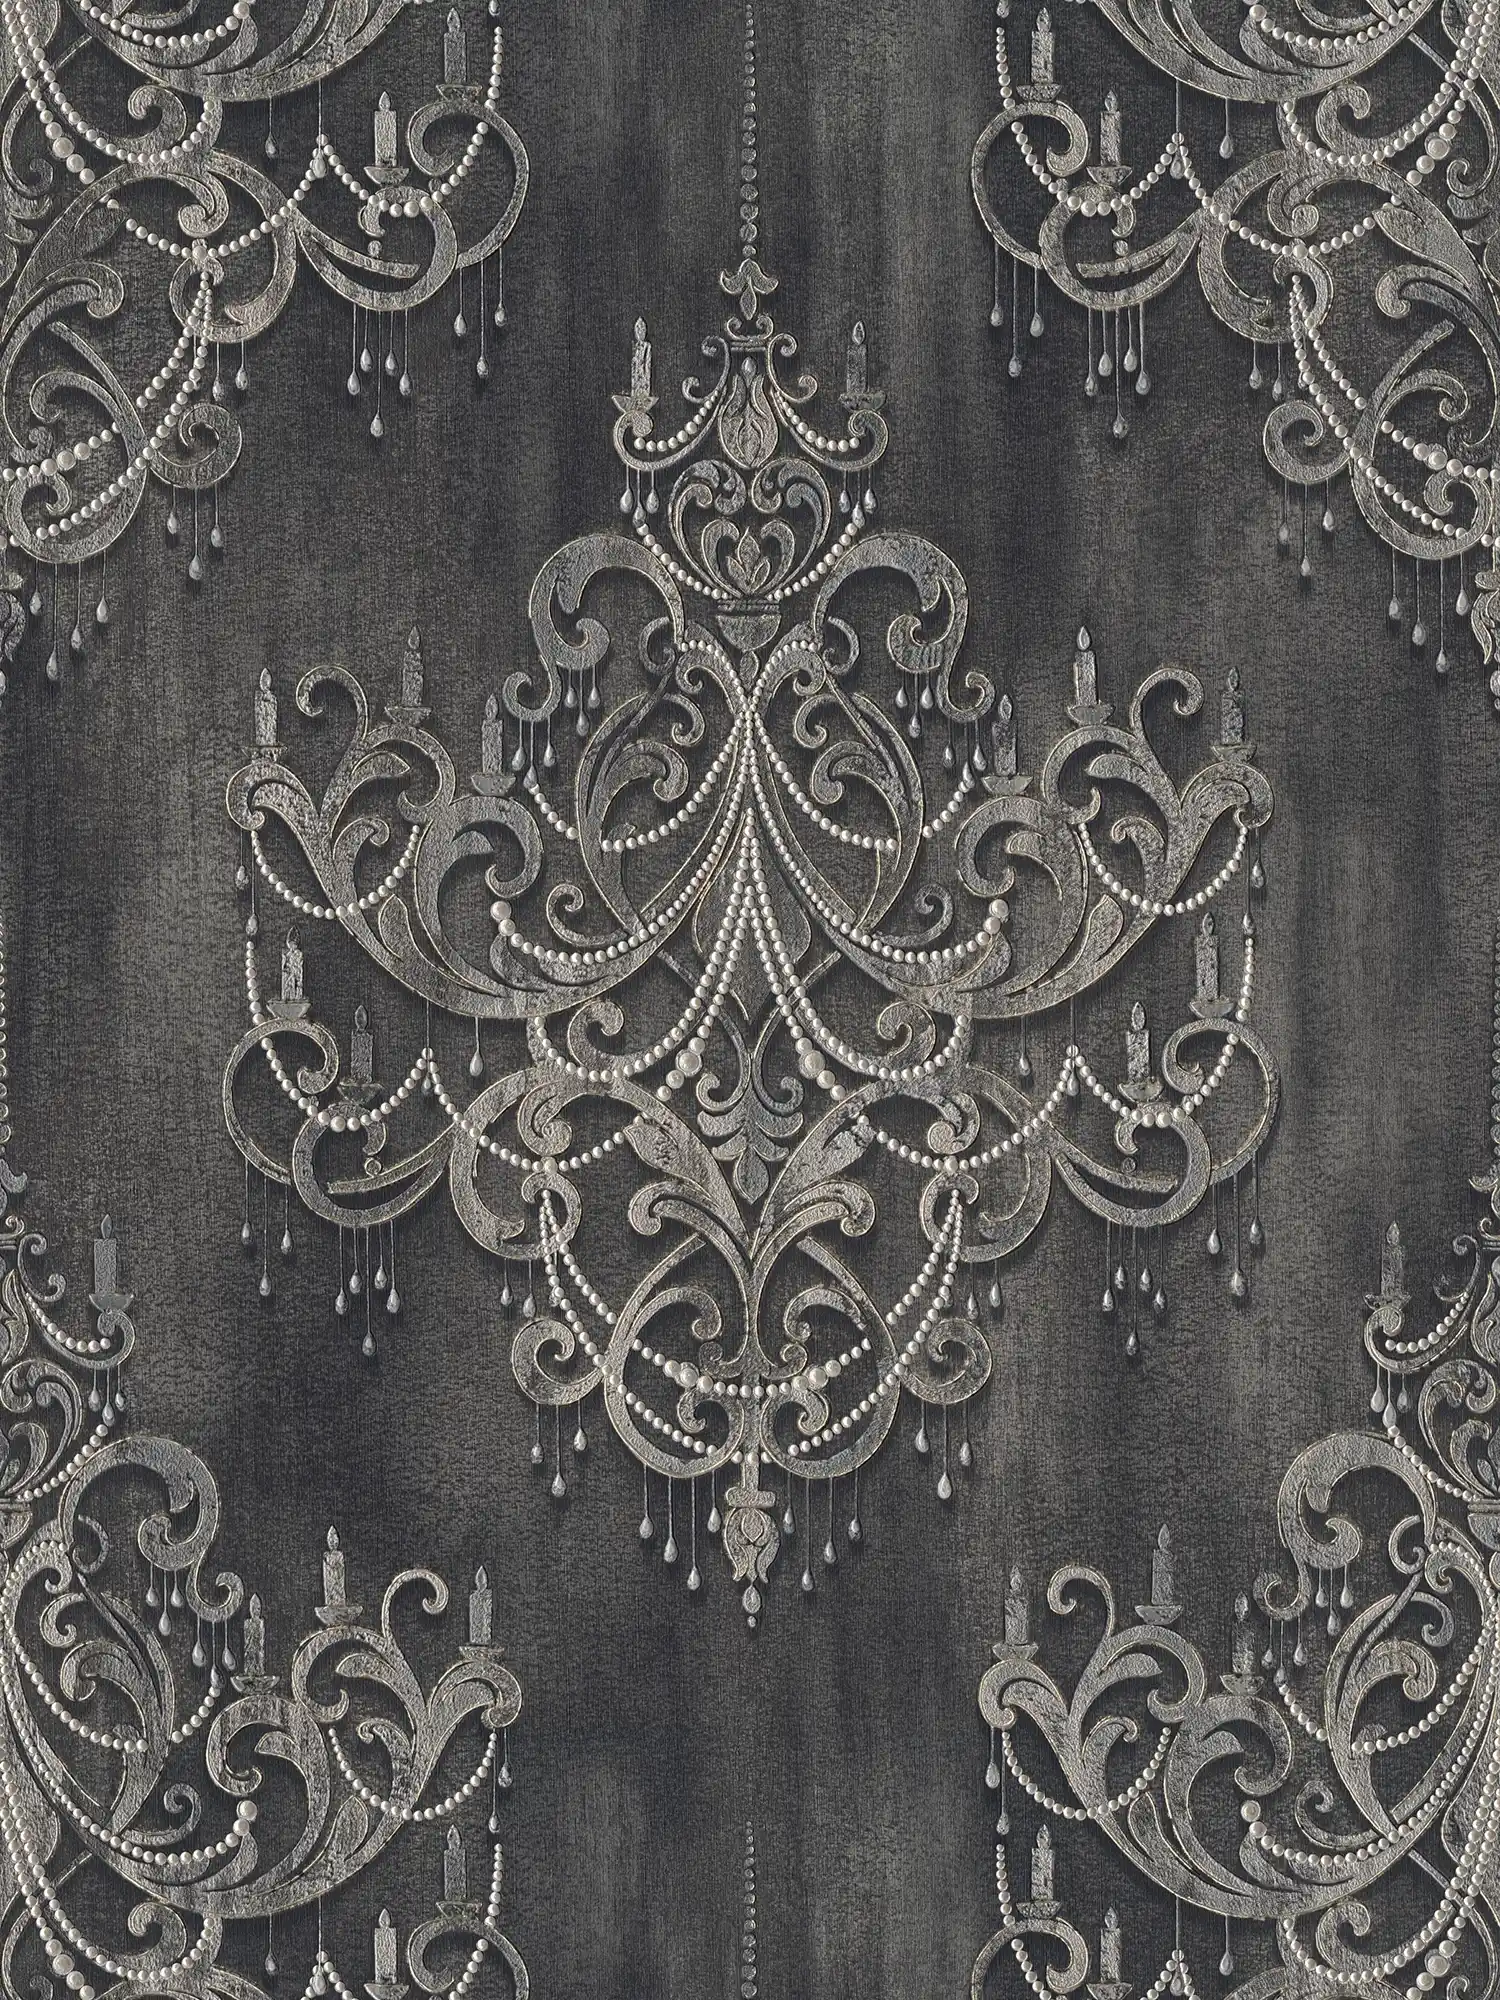 Zwart behang parelmoer patroon, ornamenten & metallic effect
